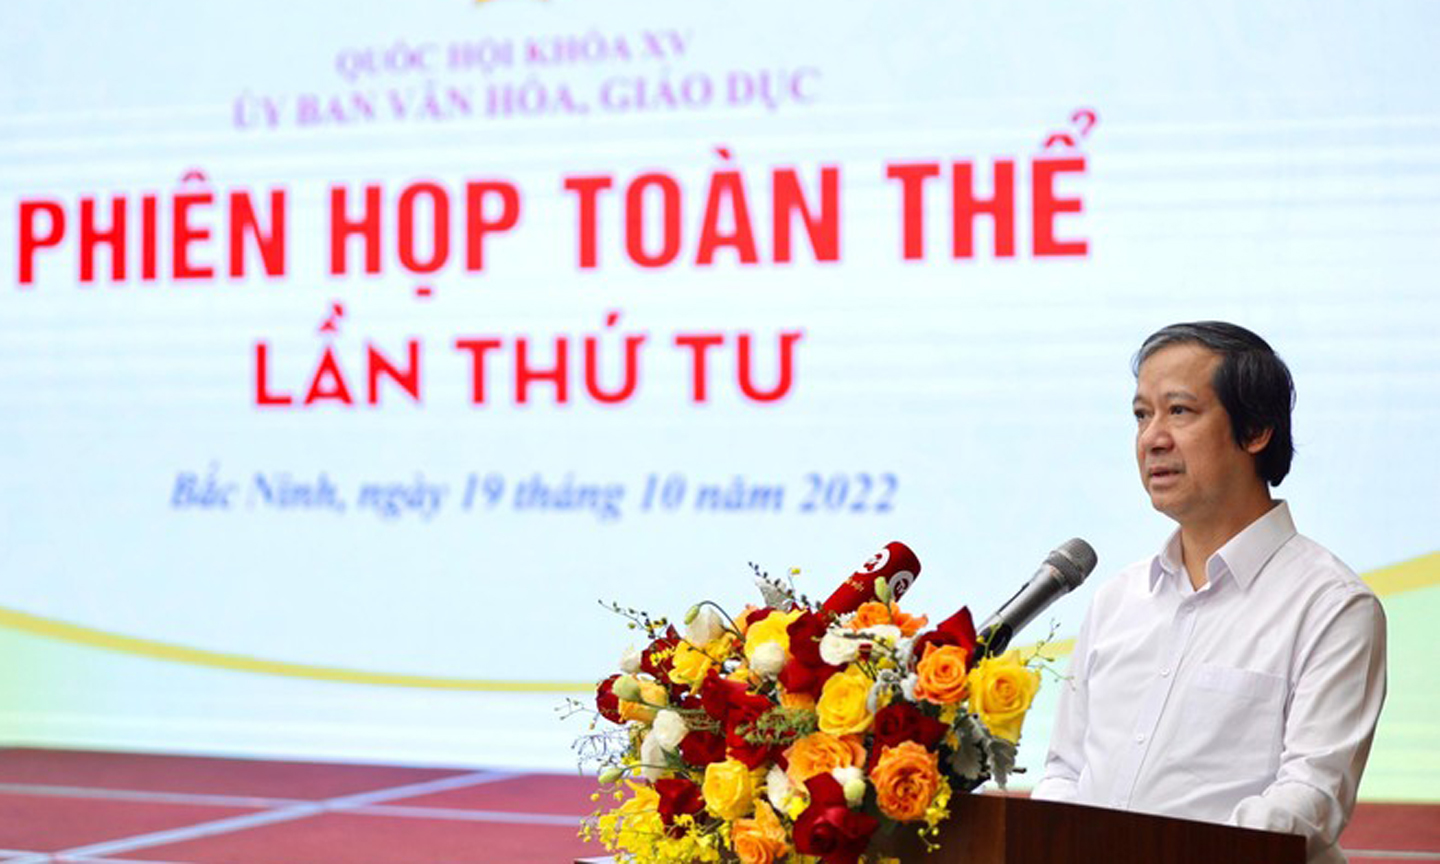 Bộ trưởng Bộ GD&ĐT Nguyễn Kim Sơn phát biểu tại Phiên họp toàn thể lần thứ 4 của Ủy ban Văn hóa, Giáo dục của Quốc hội.